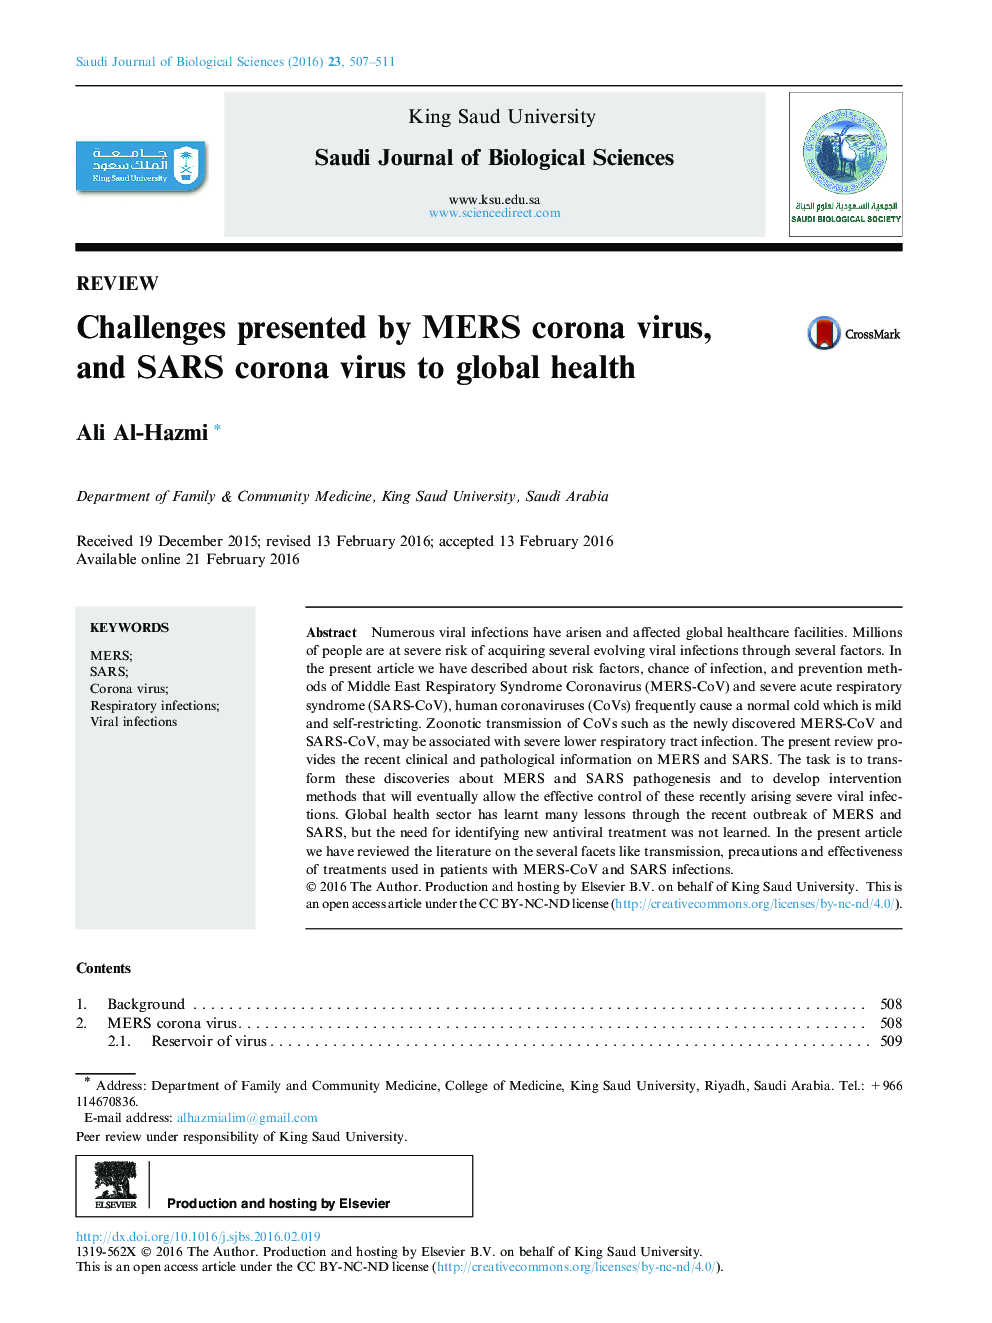 چالش های ارائه شده توسط ویروس کرونا MERS و ویروس سارس قرمز به سلامت جهانی